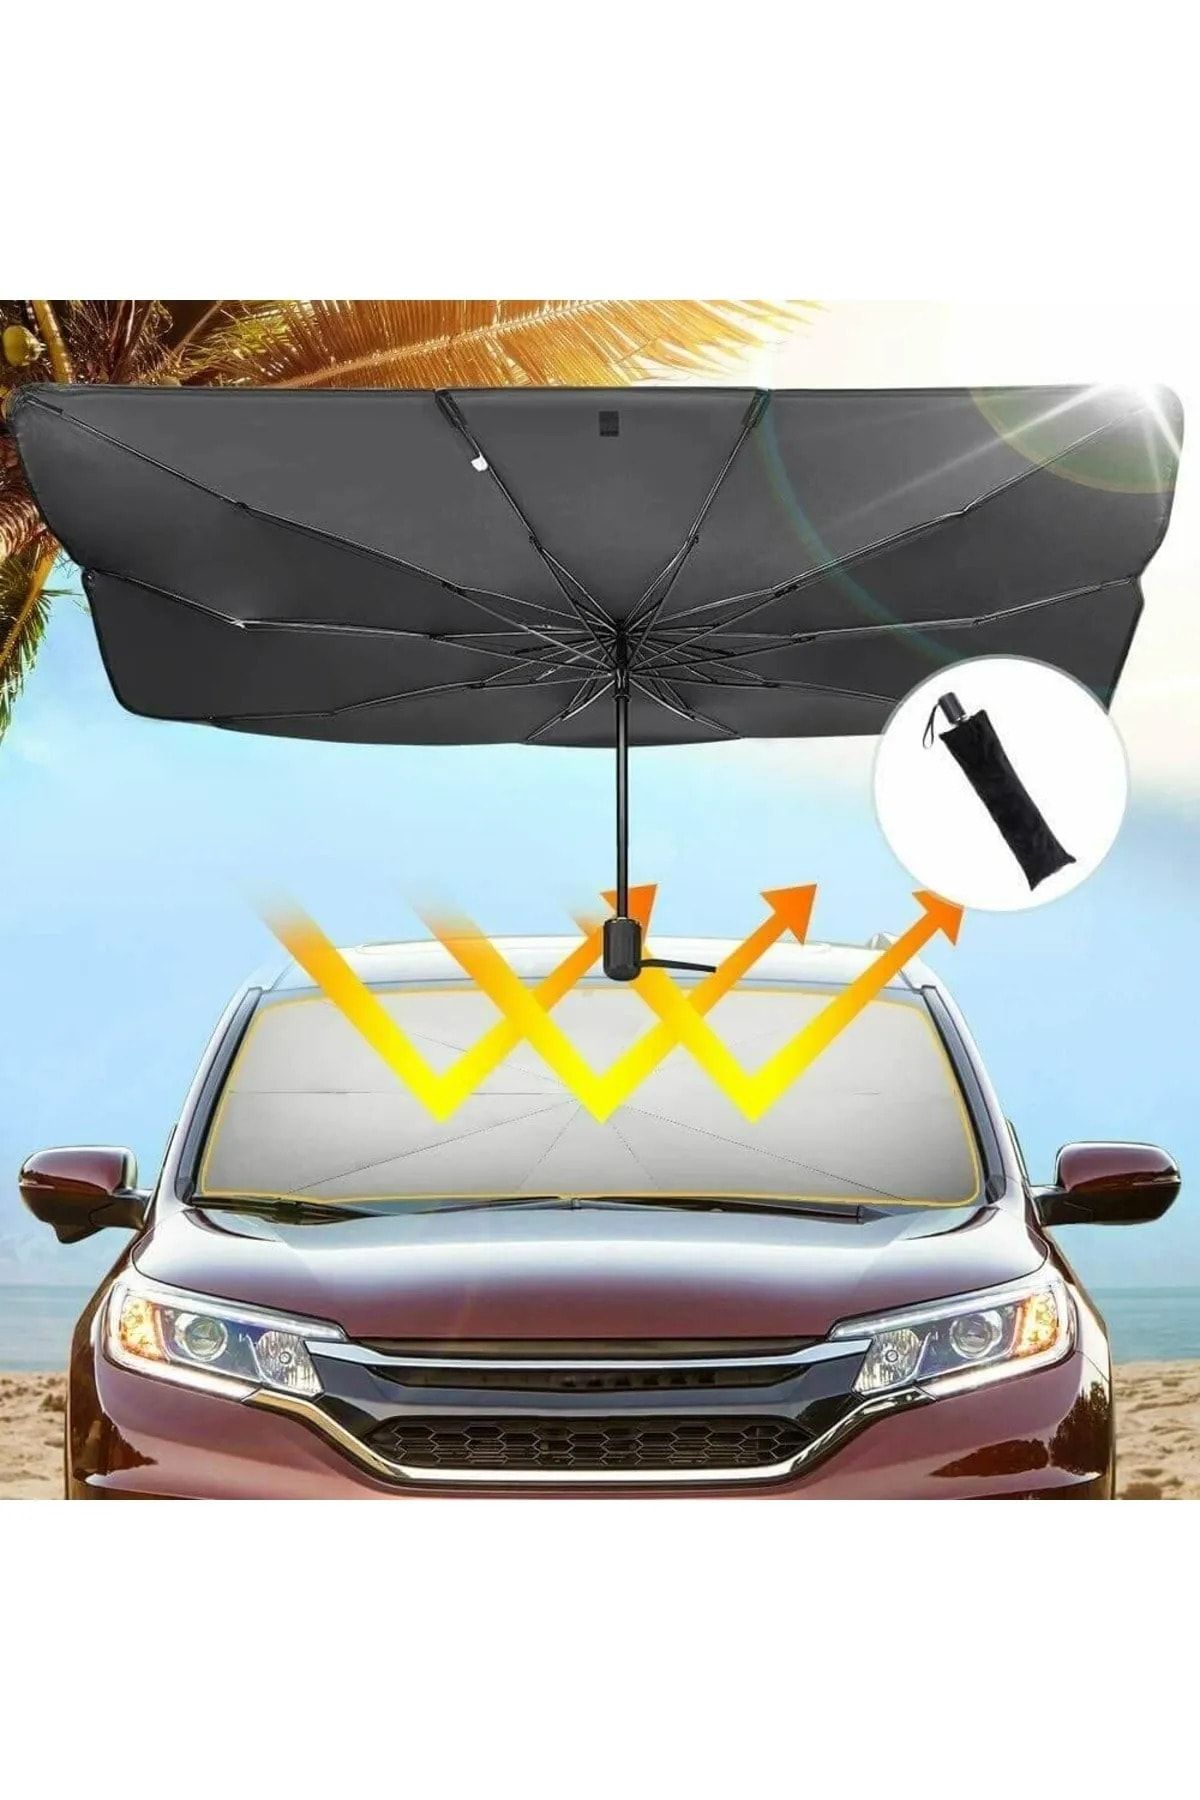 Universal Kia Besta Araba Ön Cam Güneşlik Katlanabilir Güneşlik Şemsiye Ön Cam Gölgelik